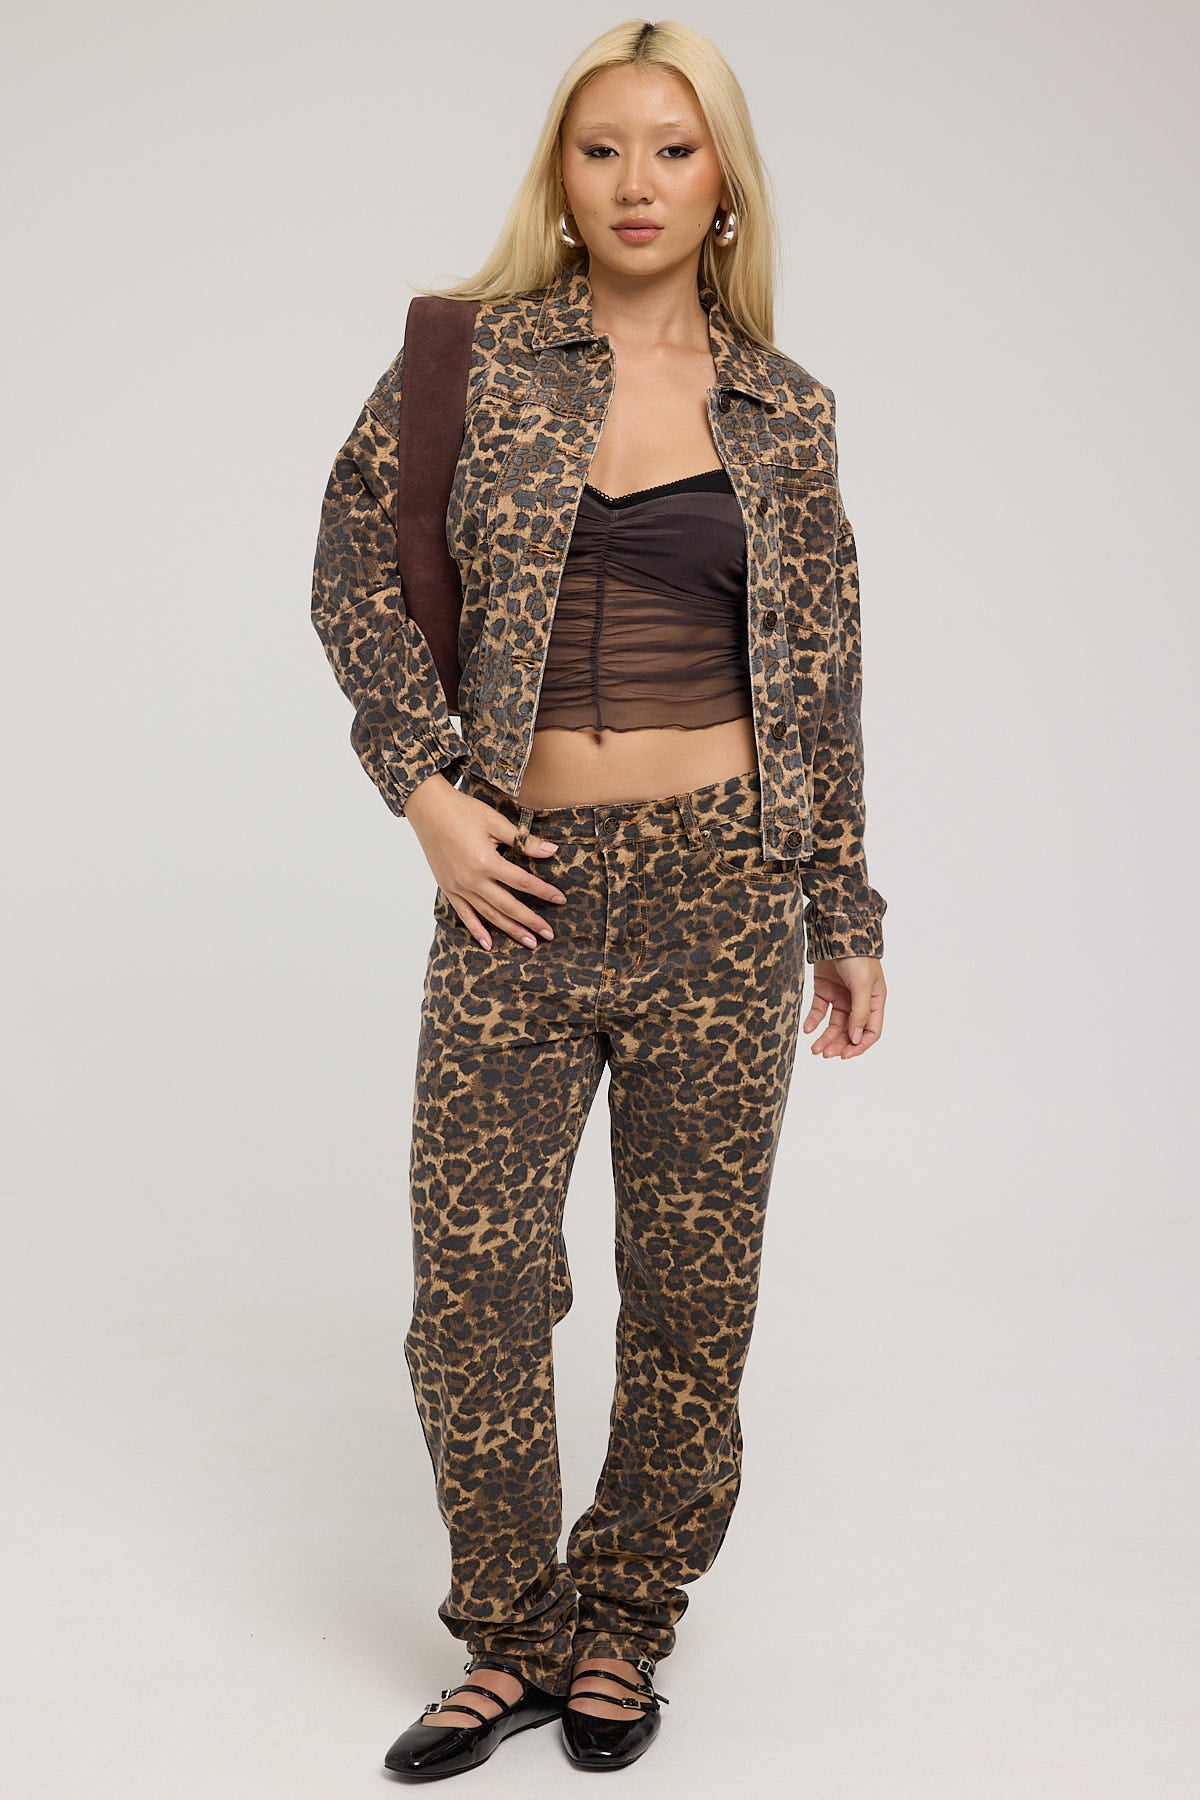 Lioness Carmela Jeans Leopard